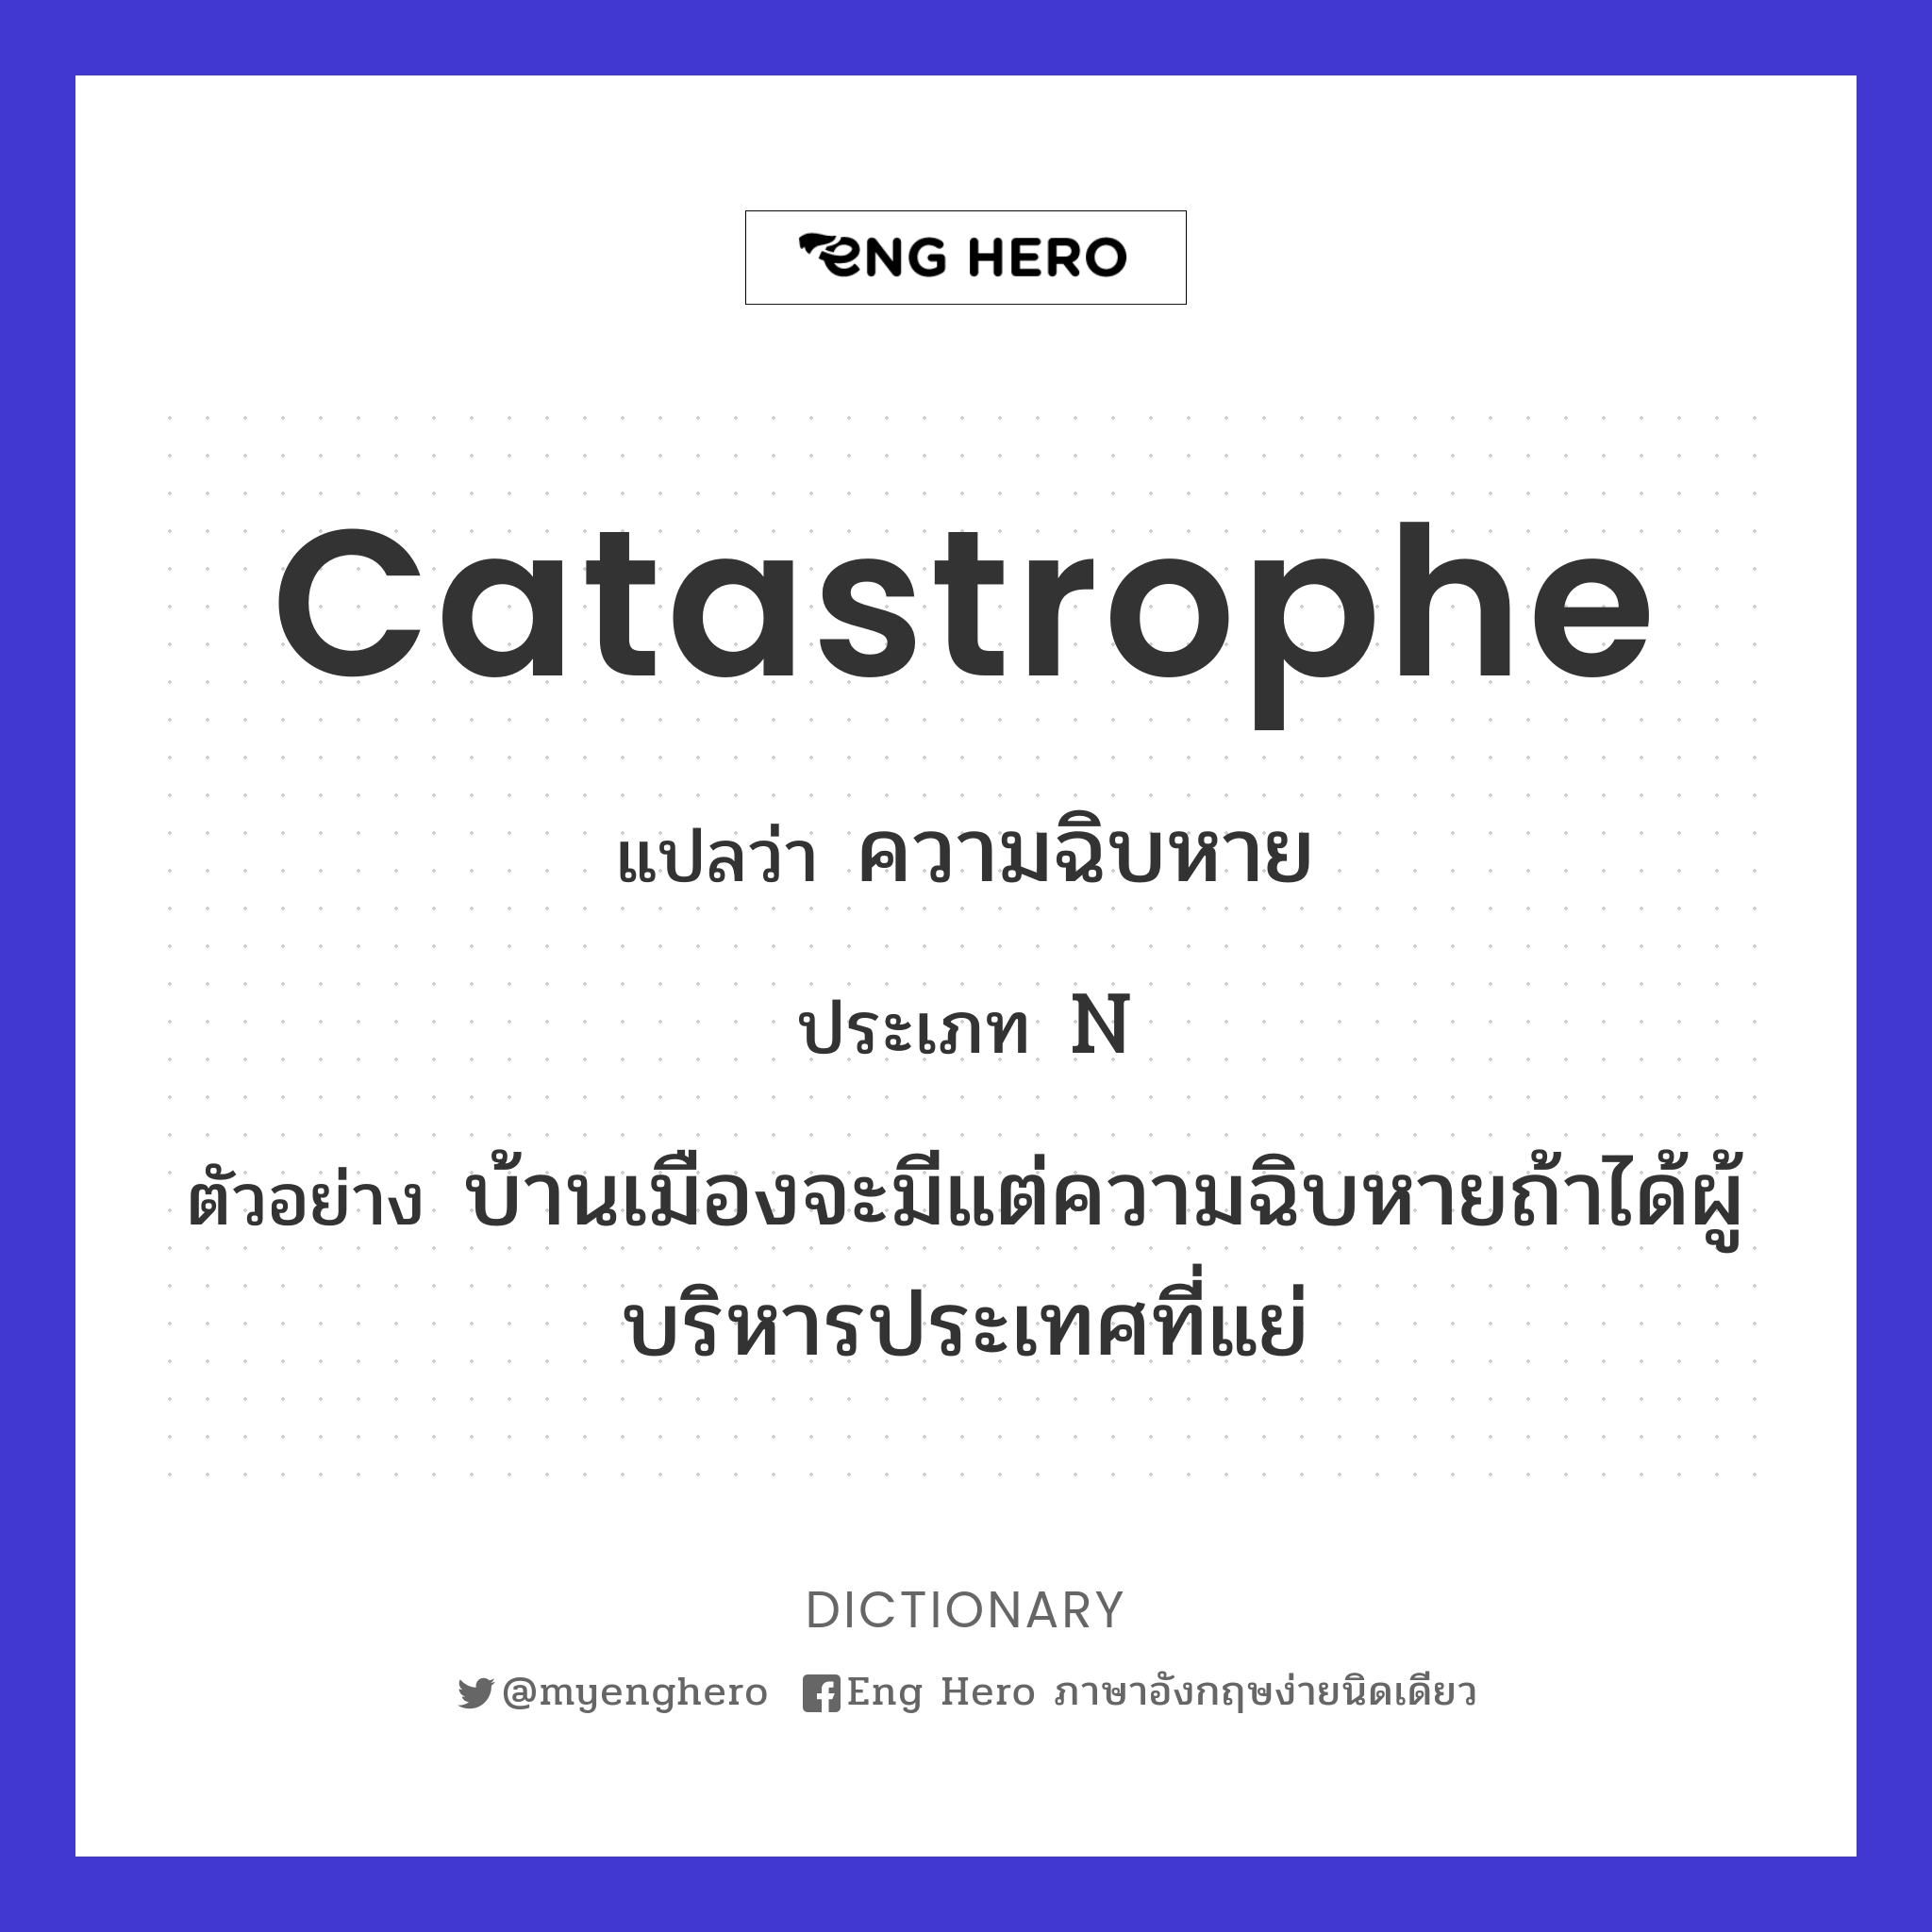 catastrophe